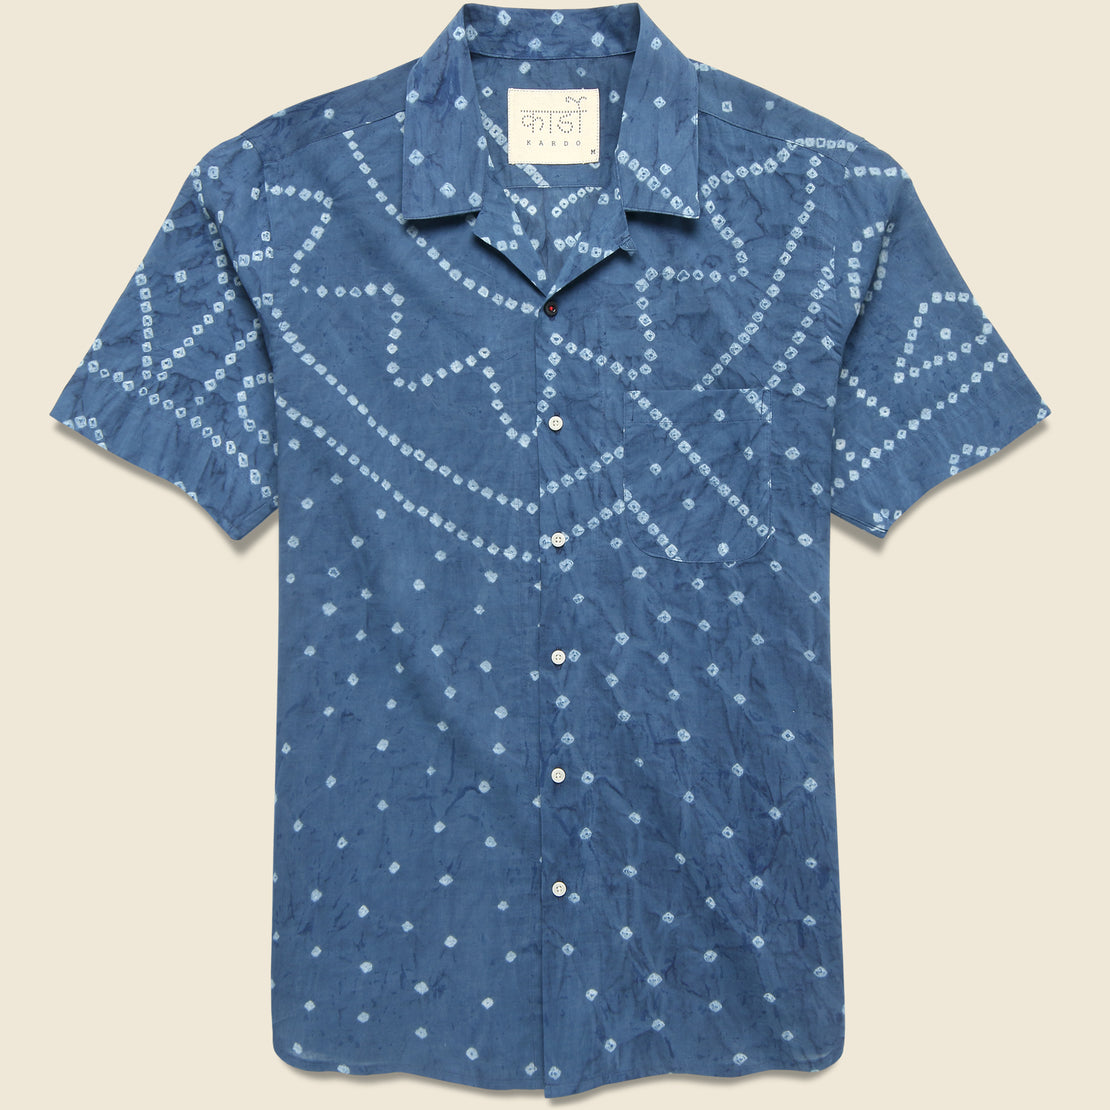 Kardo Bandhani Dot Print Shirt - Indigo